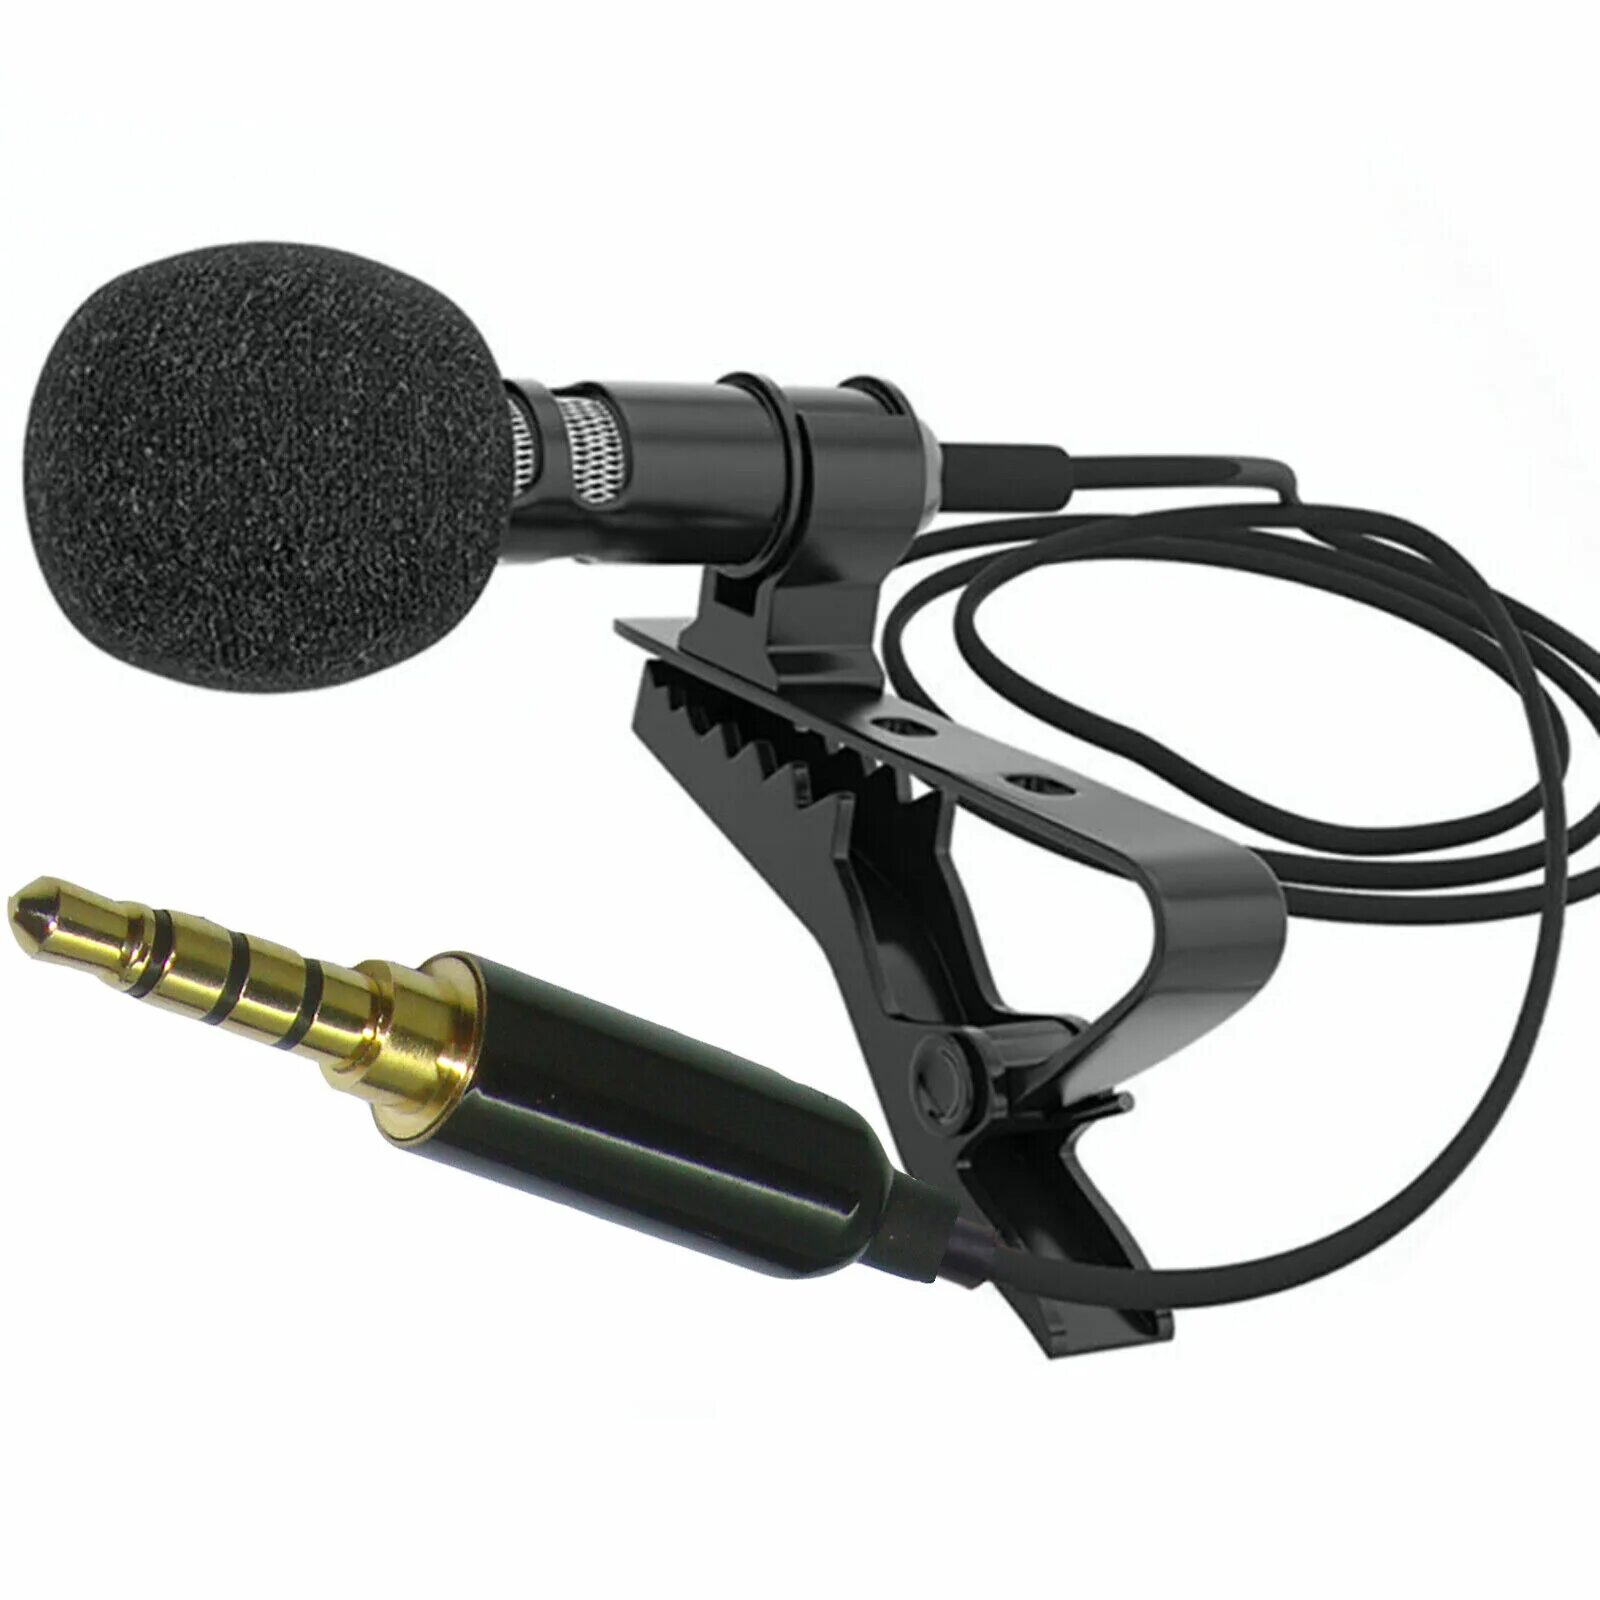 Петличный микрофон gl119. Микрофон gl-119. Lavalier Microphone gl-119 3.5 mm. Микрофон петличный Lavalier.